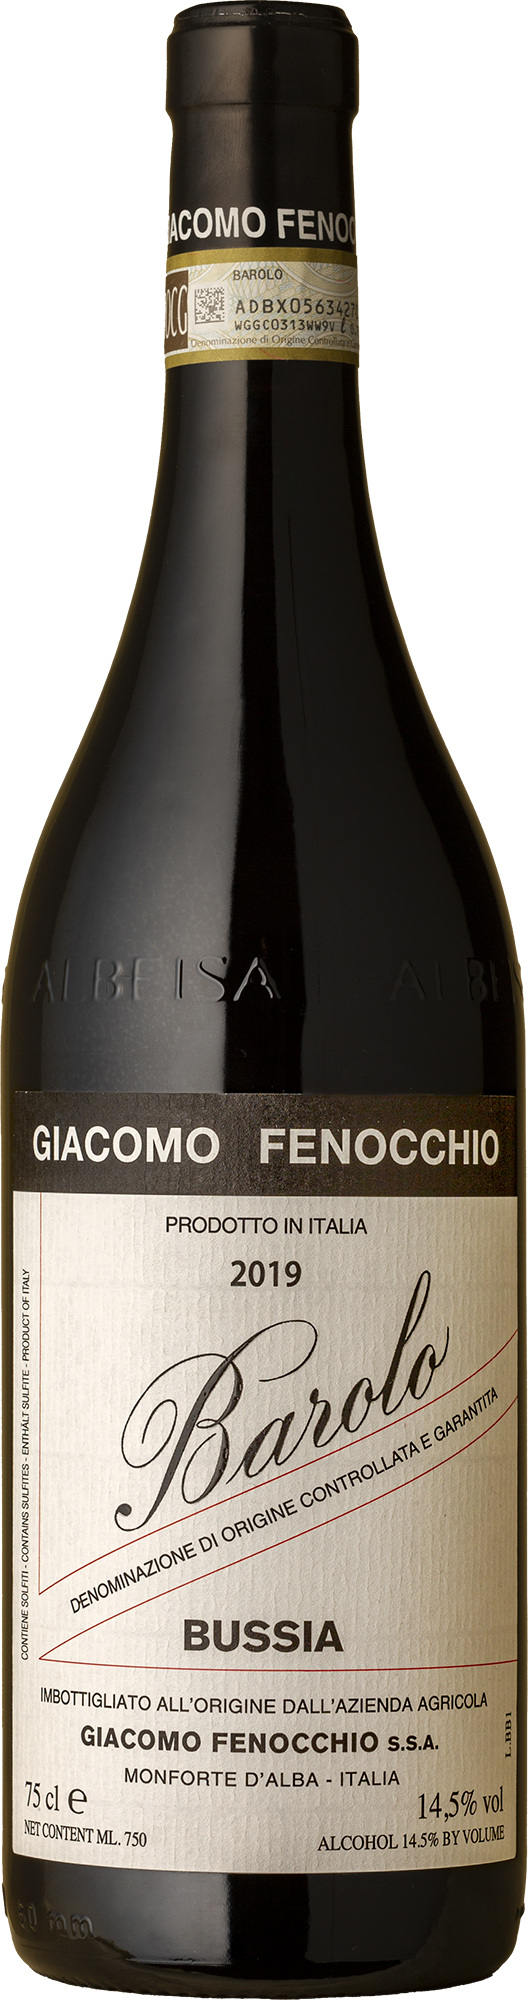 Giacomo Fenocchio - Barolo Bussia Nebbiolo 2019 Red Wine